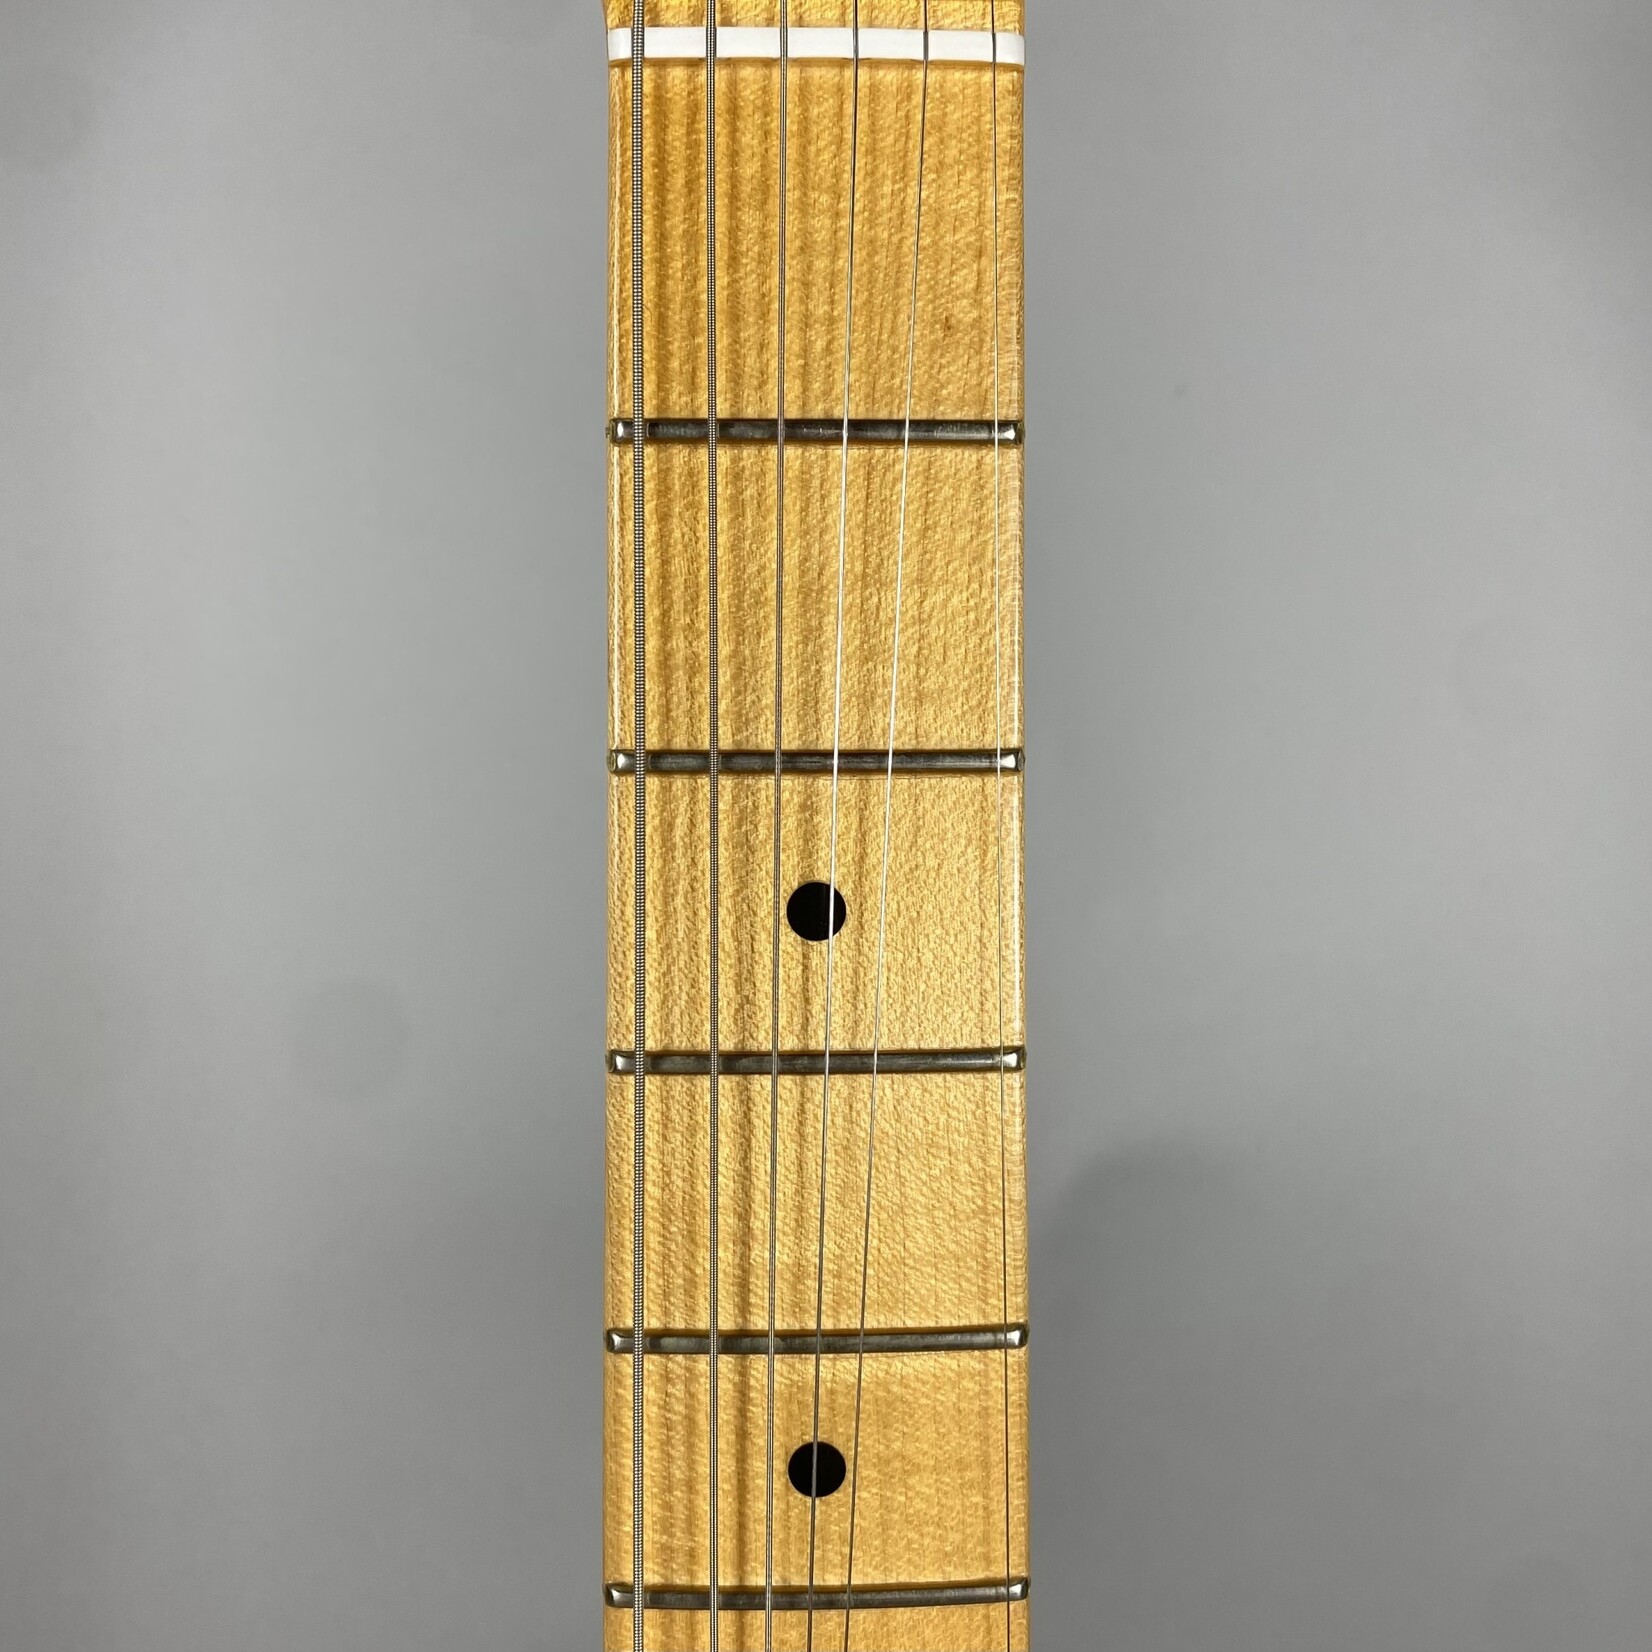 Fender 2012 Fender Stratocaster Pro NOS Dakota Red